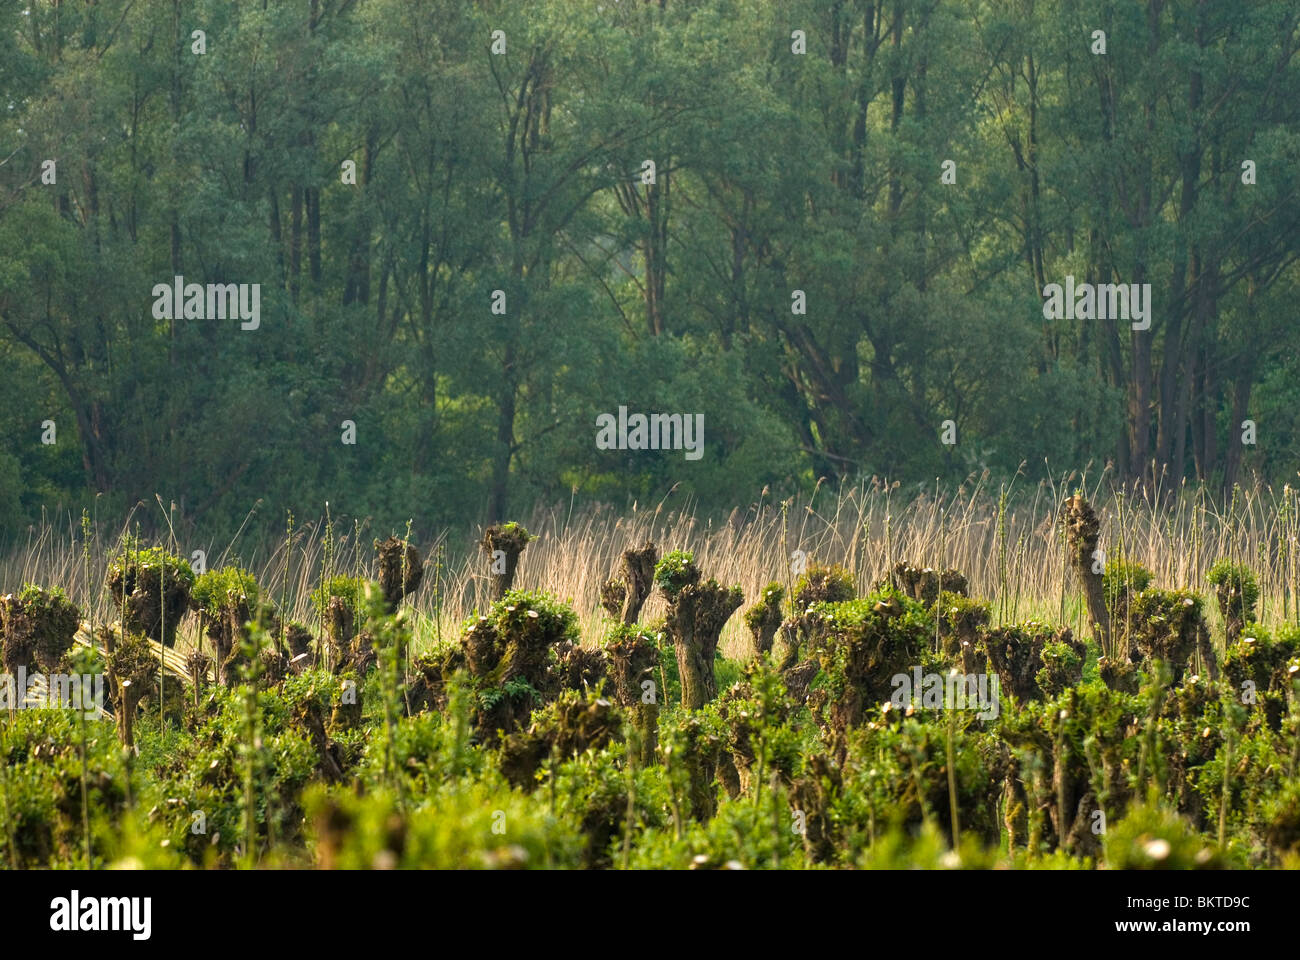 Griendcultuur en wilgenvloedbos op de Pannekoek in Nationaalpark de Biesbosch; Willowcoppice and willow woodland in Biesbosch National Park Stock Photo